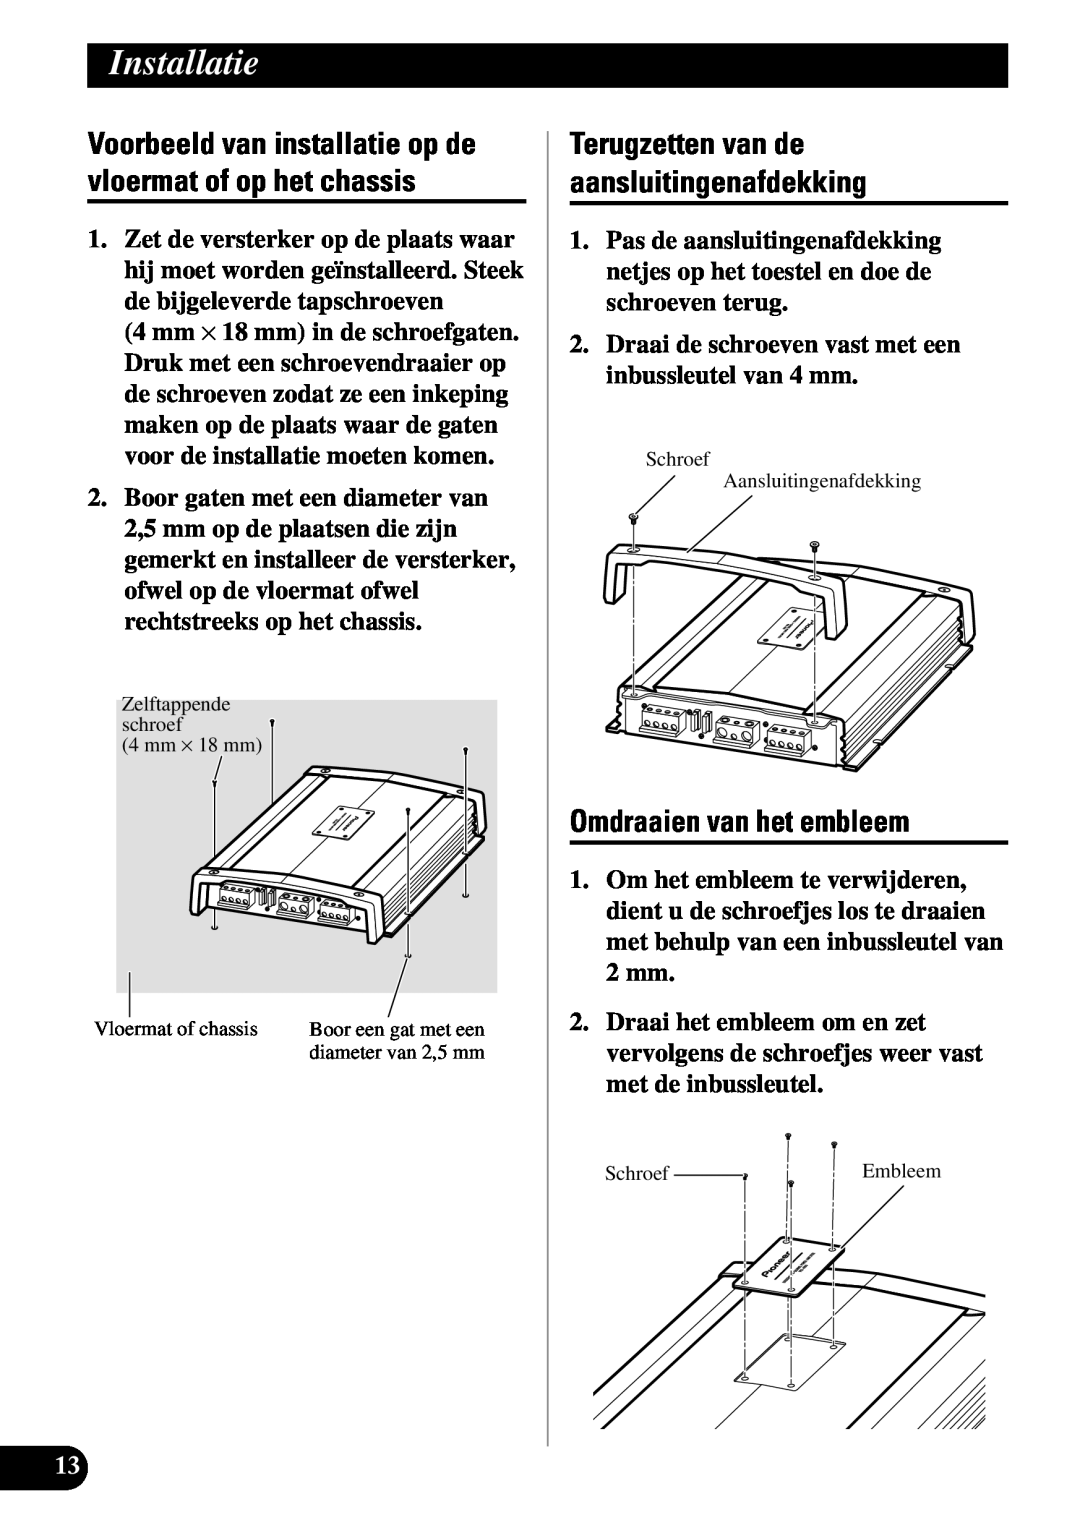 Pioneer PRS-A900 owner manual Omdraaien van het embleem, Terugzetten van de aansluitingenafdekking, Installatie 